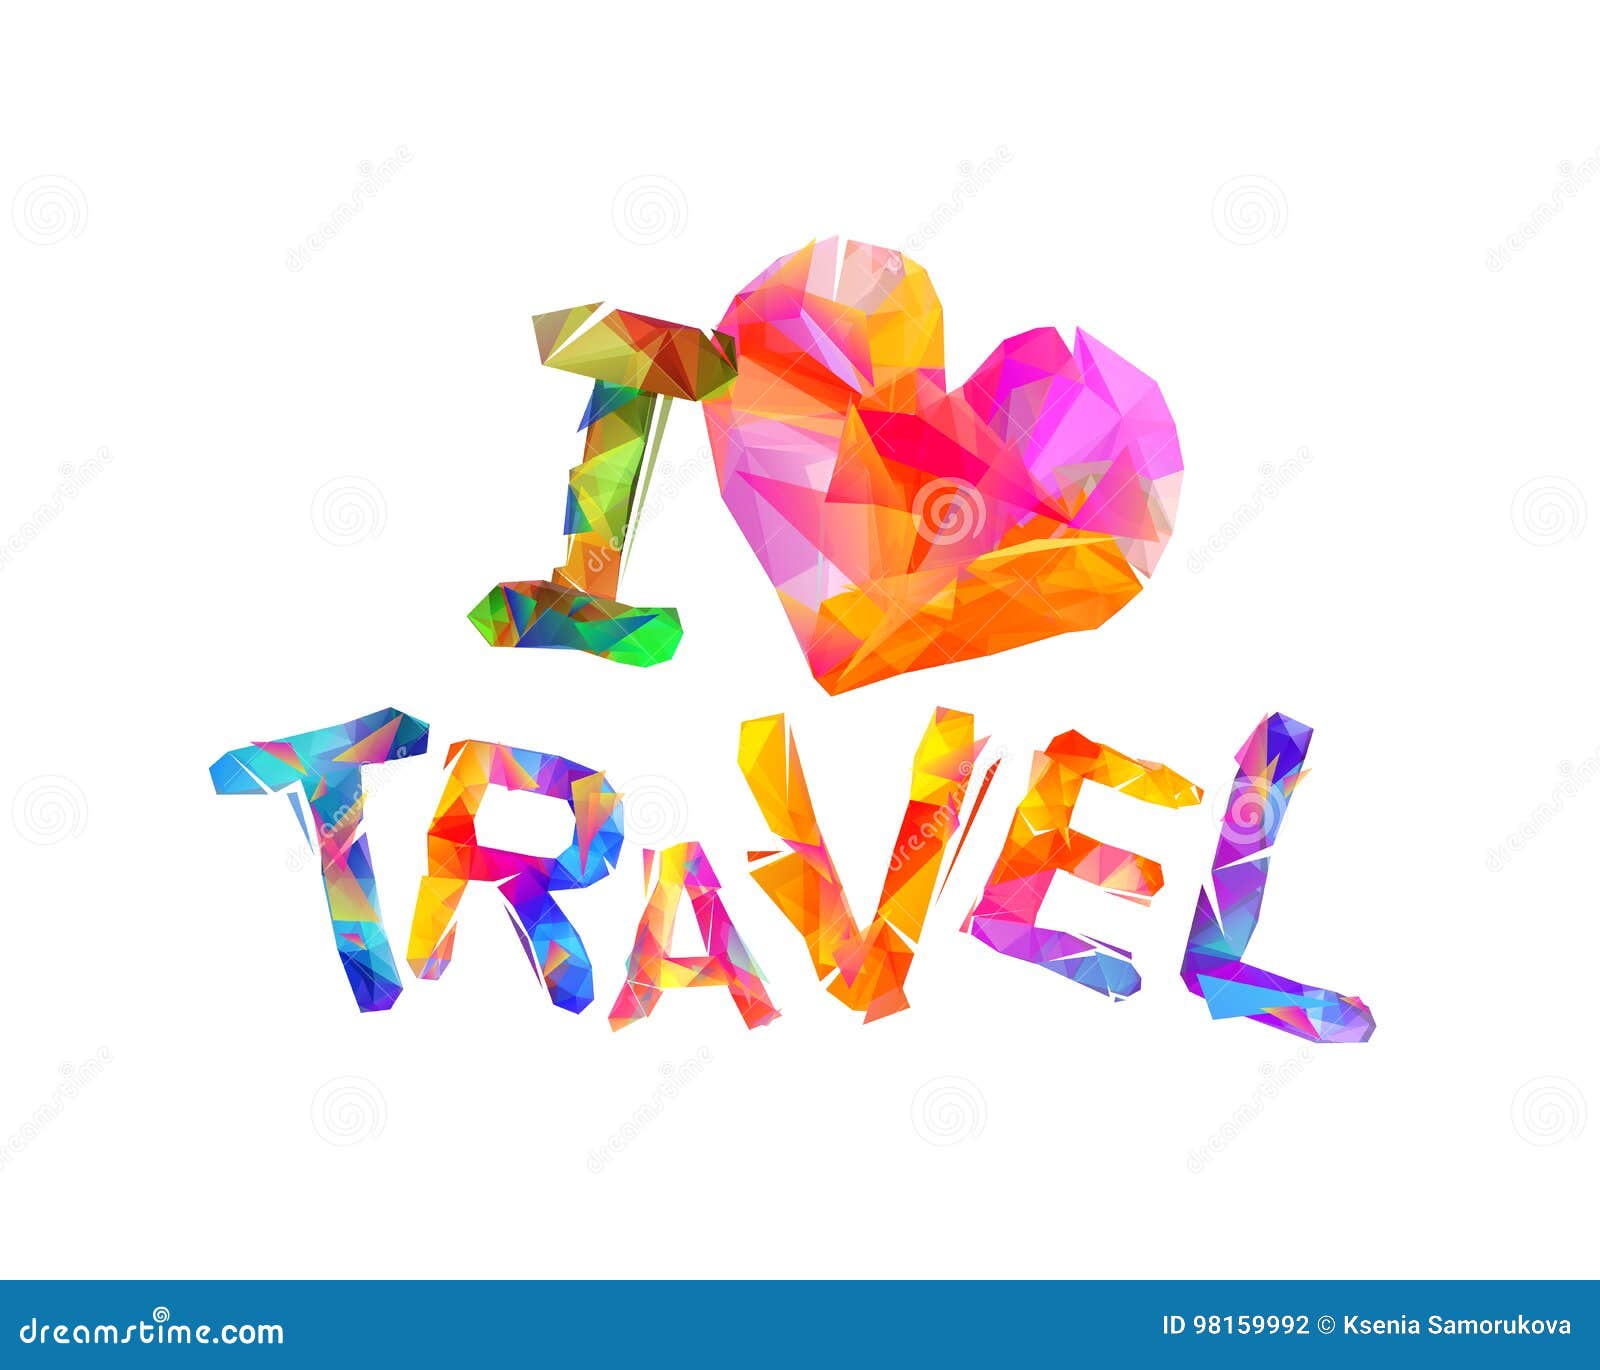 love travel reisen